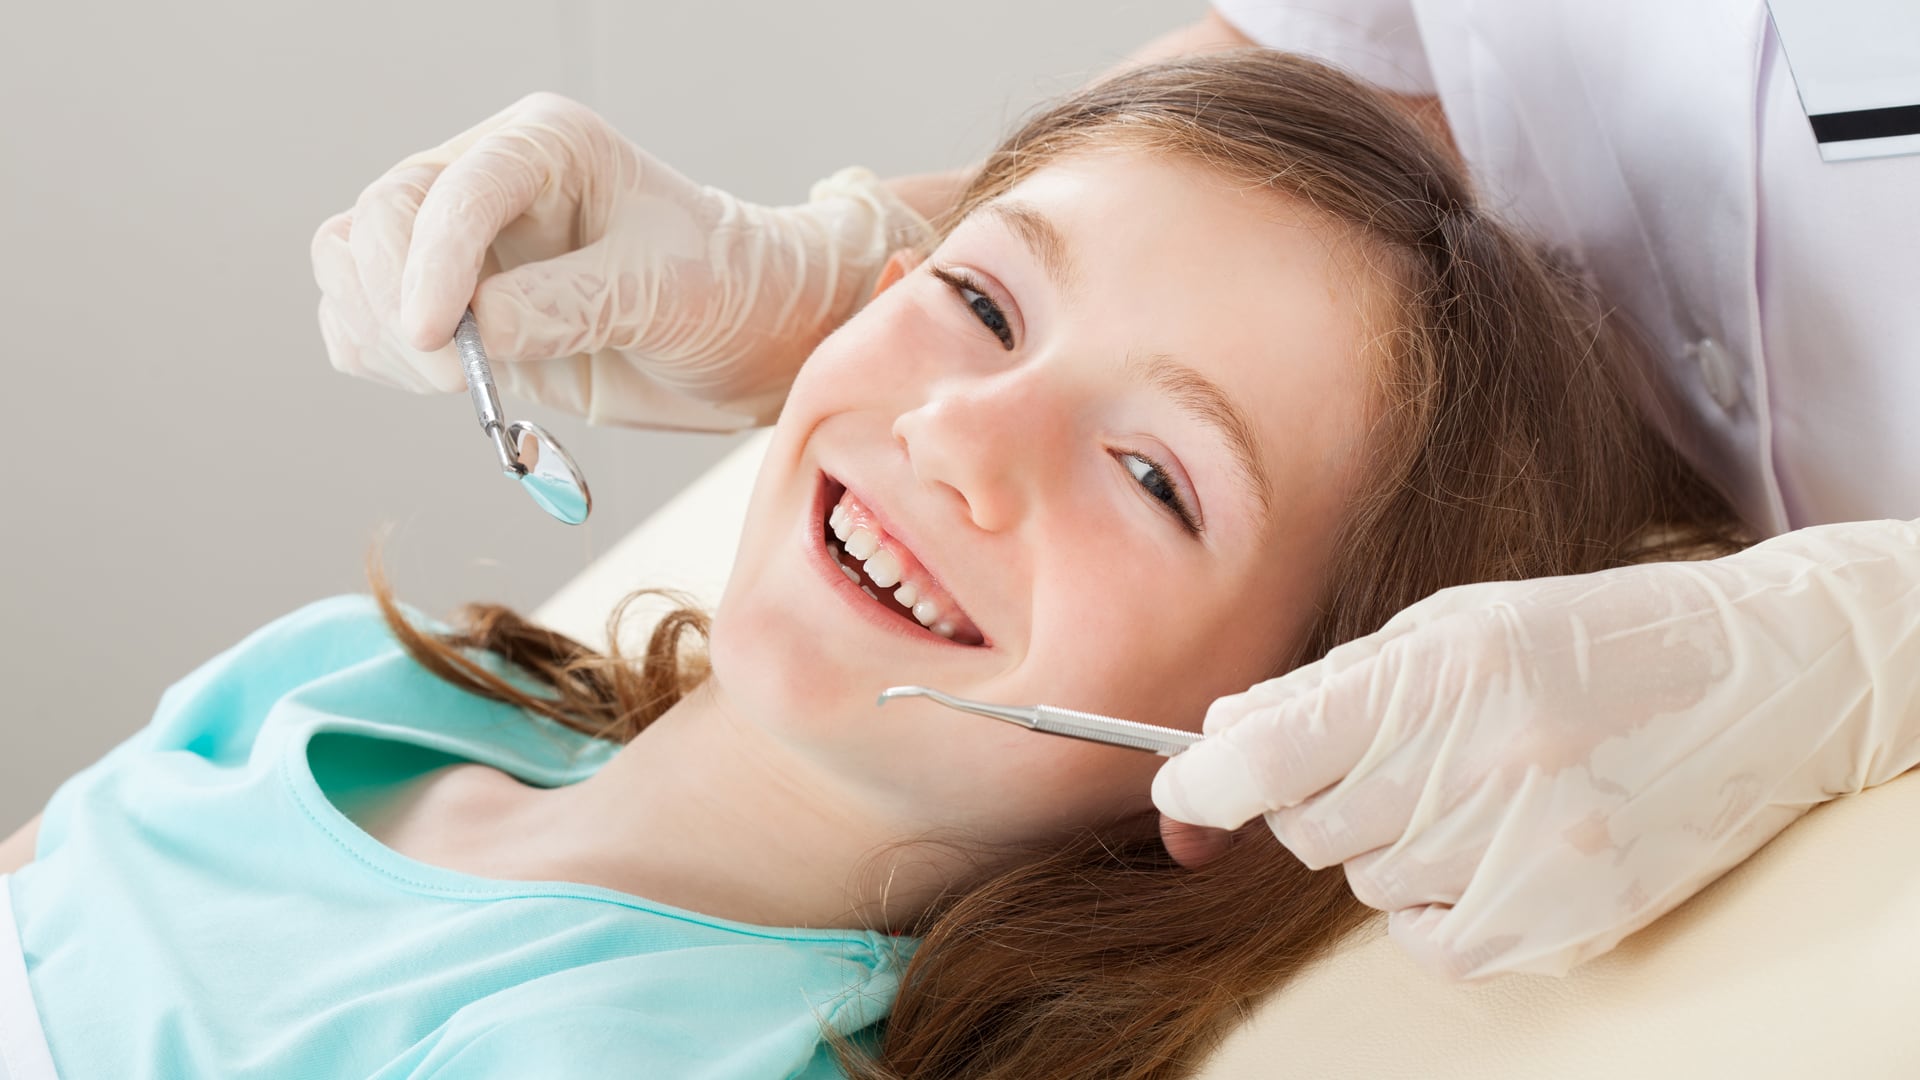 Los odontólogos piden cuidar la salud mental, especialmente en niños (Getty)